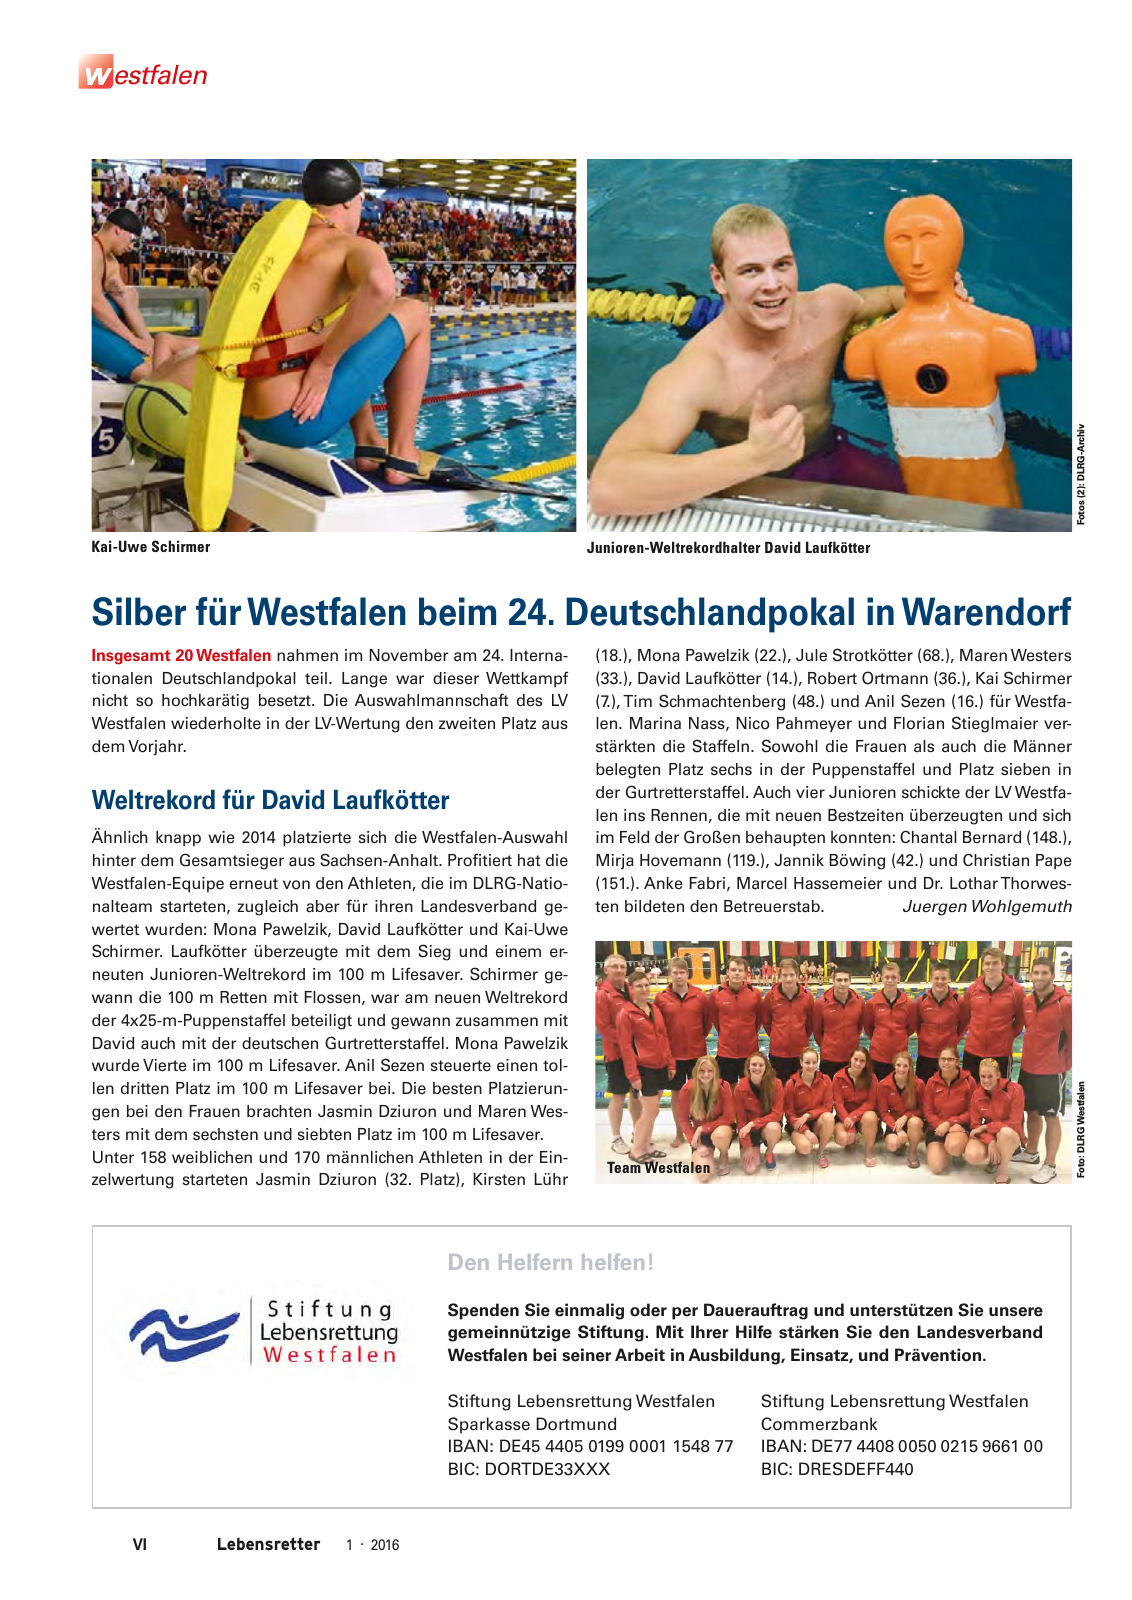 Vorschau Lebensretter 1/2016 - Regionalausgabe Westfalen Seite 8